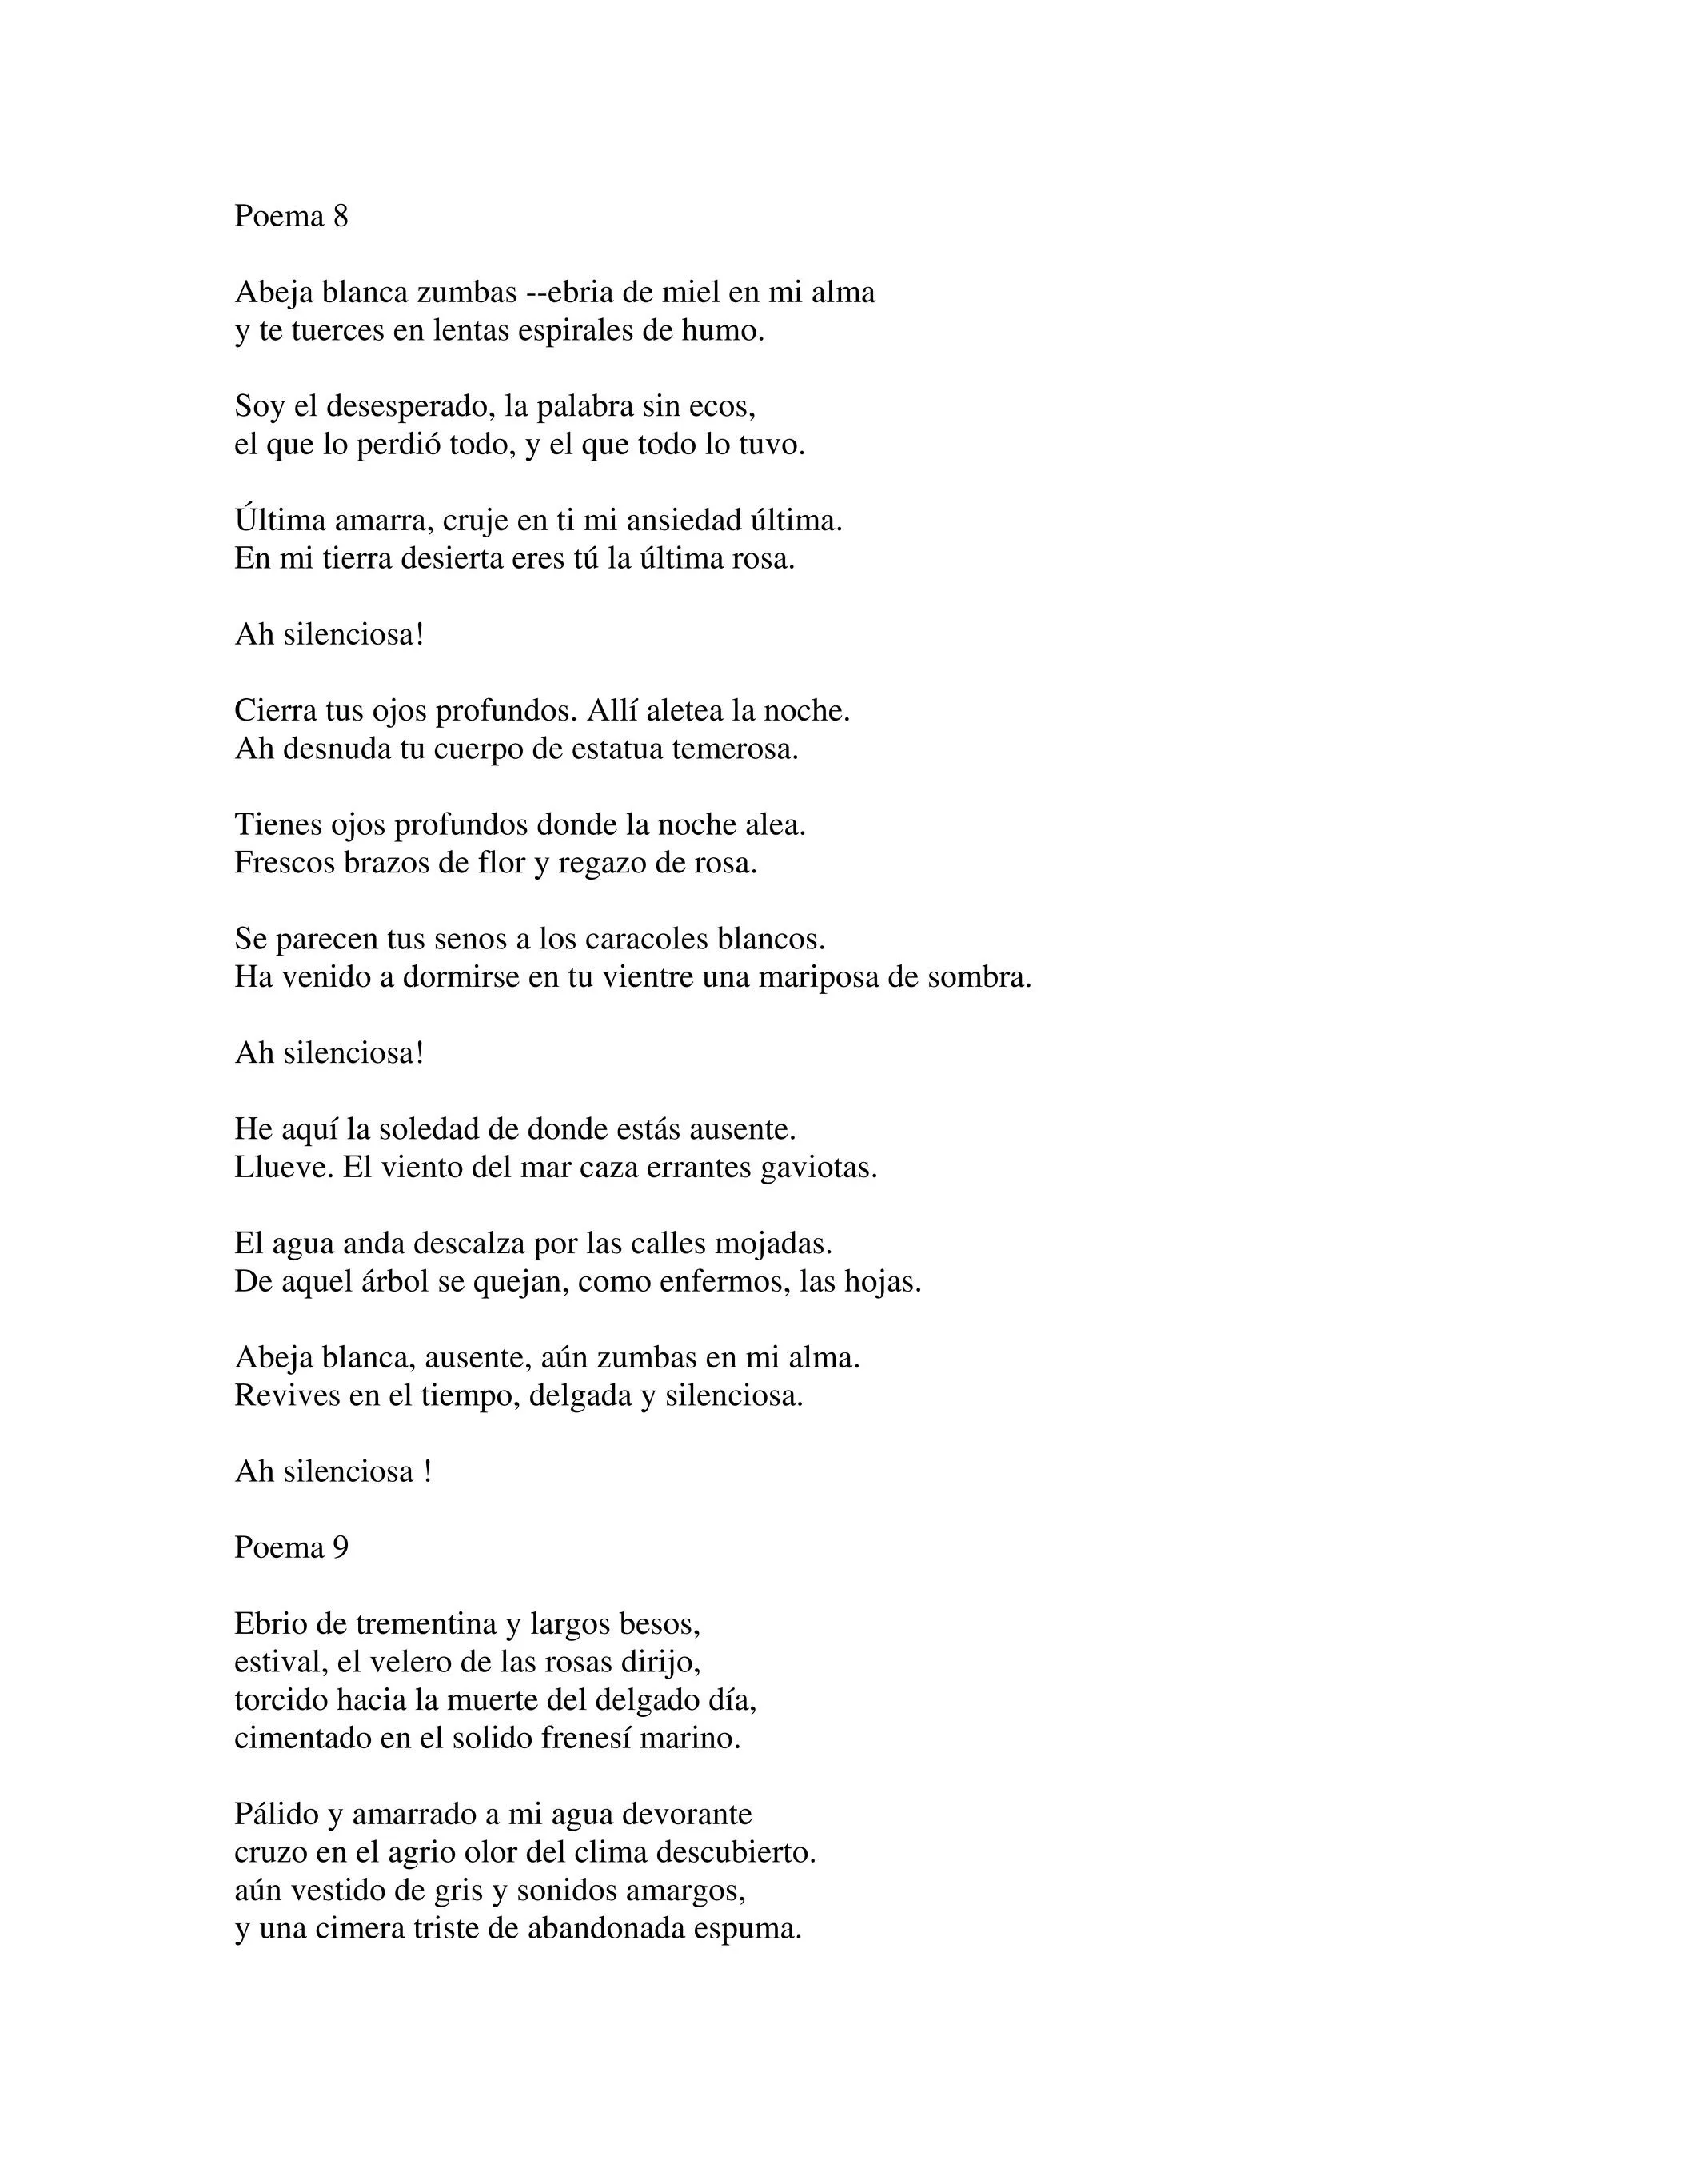 Voldia.inc - Veinte poemas de amor y una canción desesperada - Page 14-15 -  Created with Publitas.com